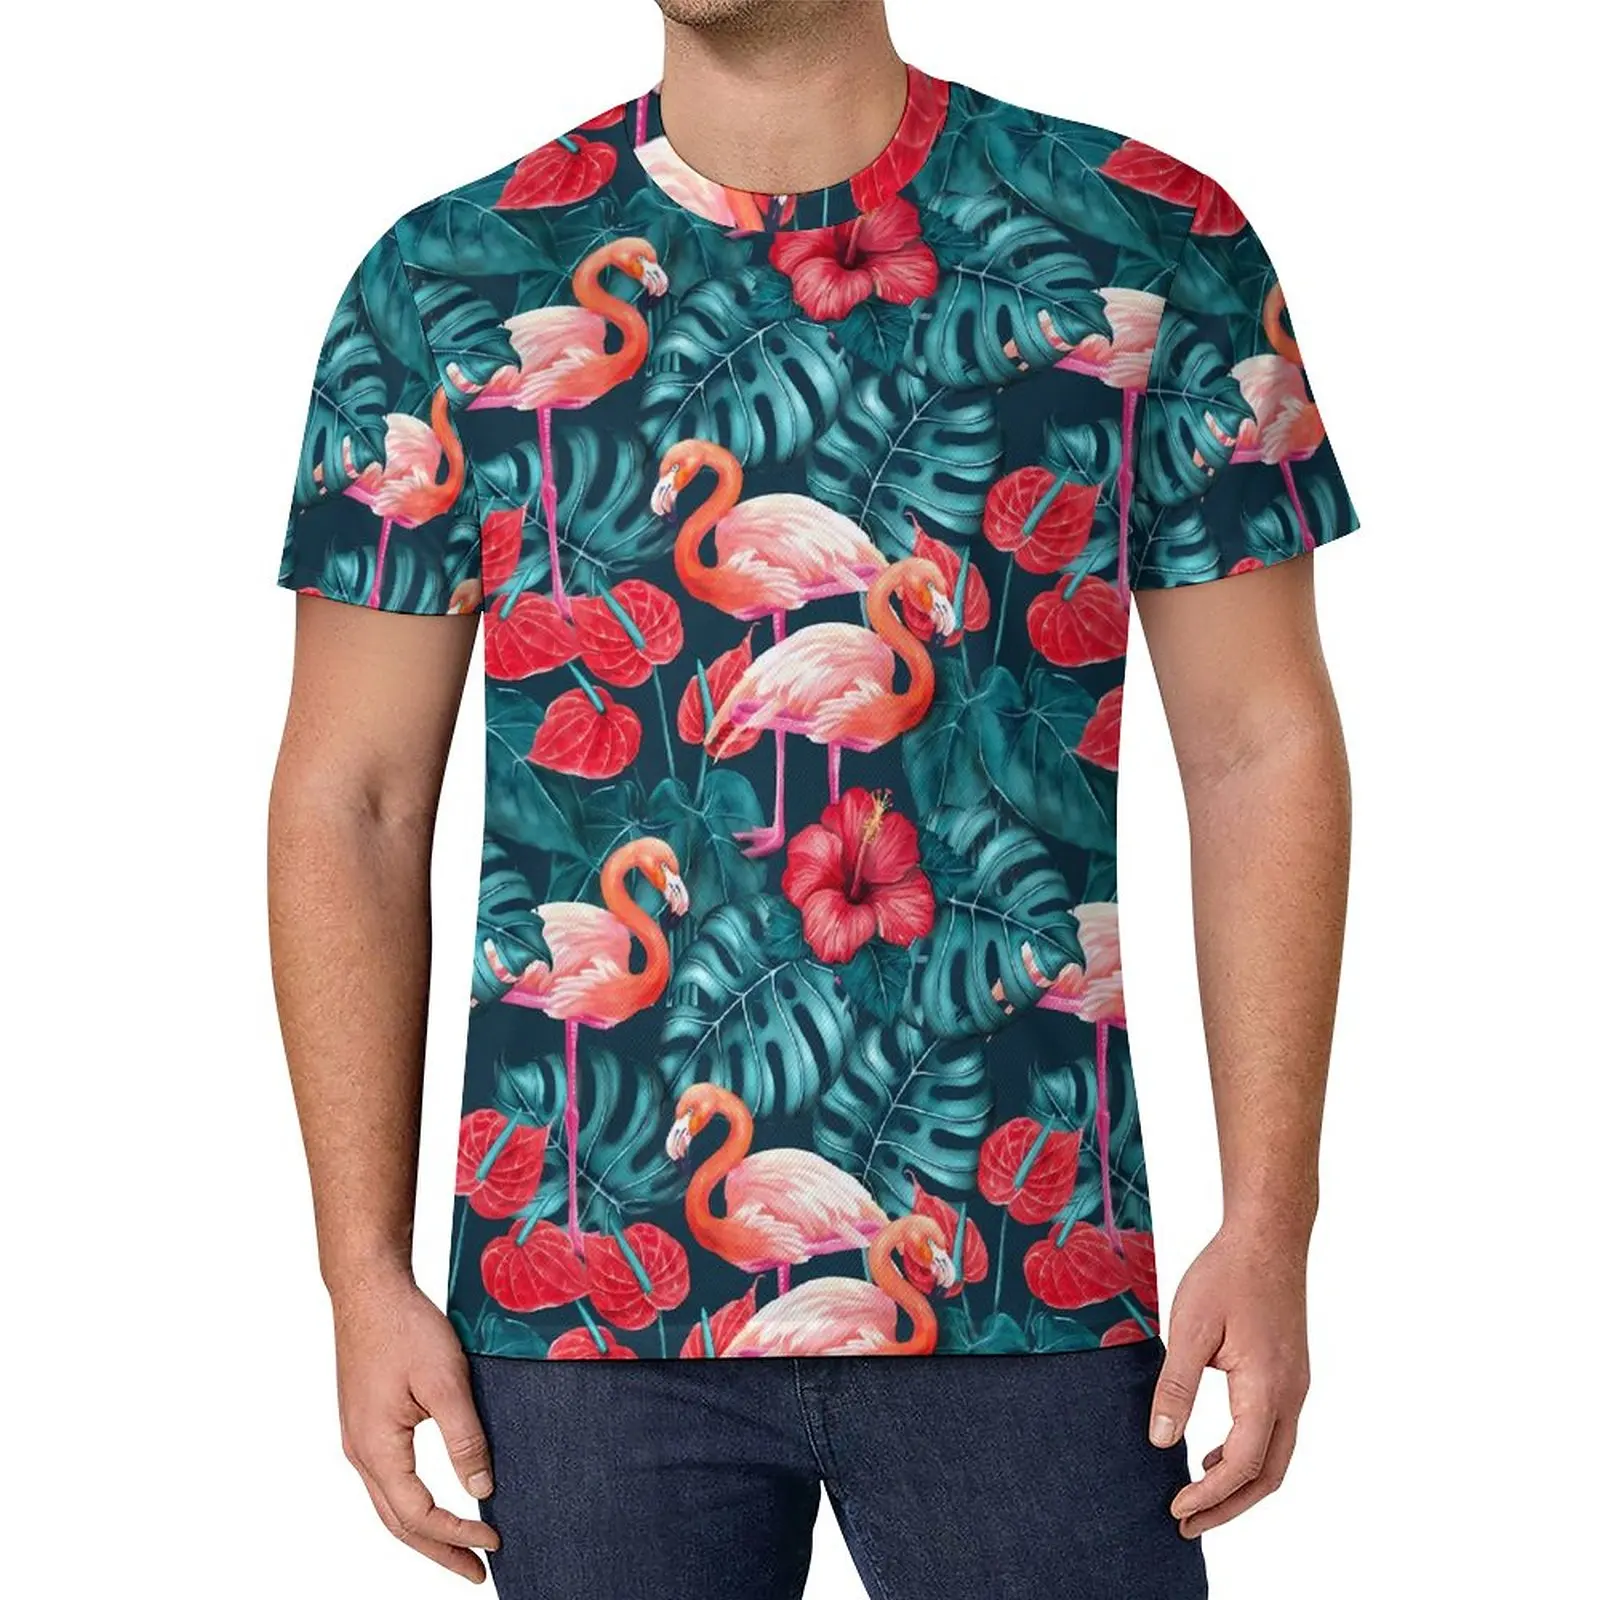 

Футболка с тропическими птицами, футболки в уличном стиле с фламинго и цветами, футболка в стиле хиппи, мужские топы с графическим рисунком, ...